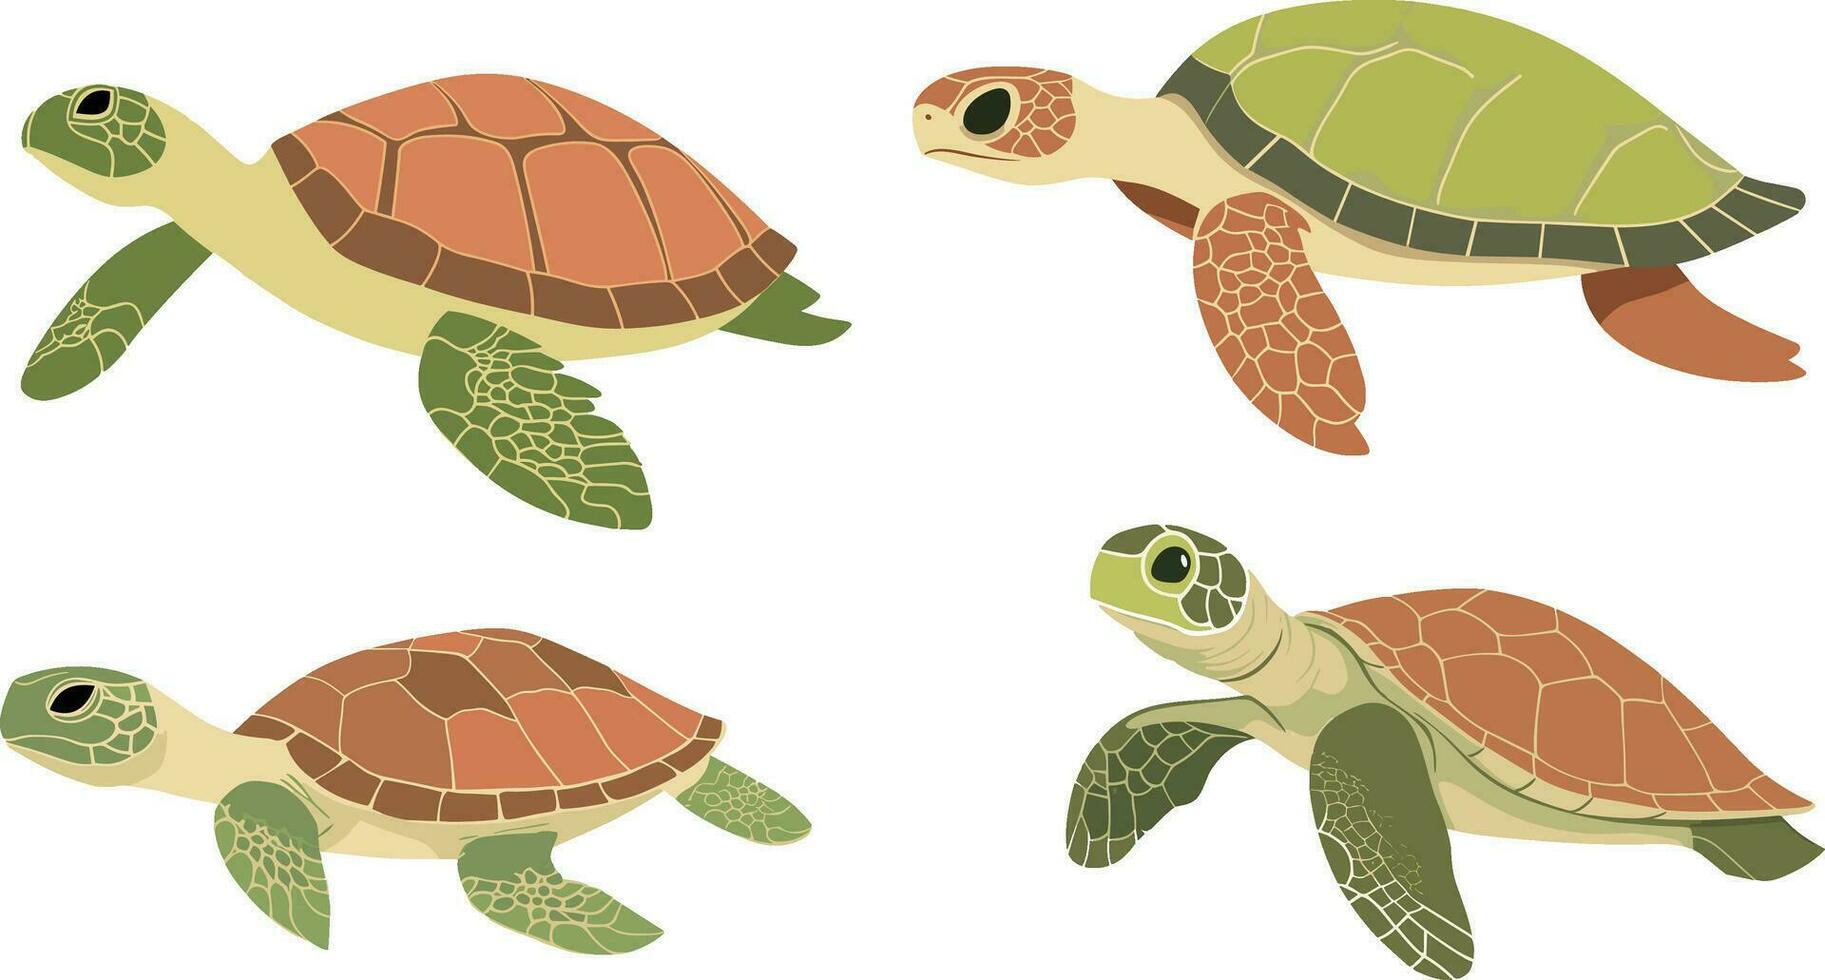 Tortuga reptil ilustración nadando en el mar sencillo mano dibujado estilo ilustración vector